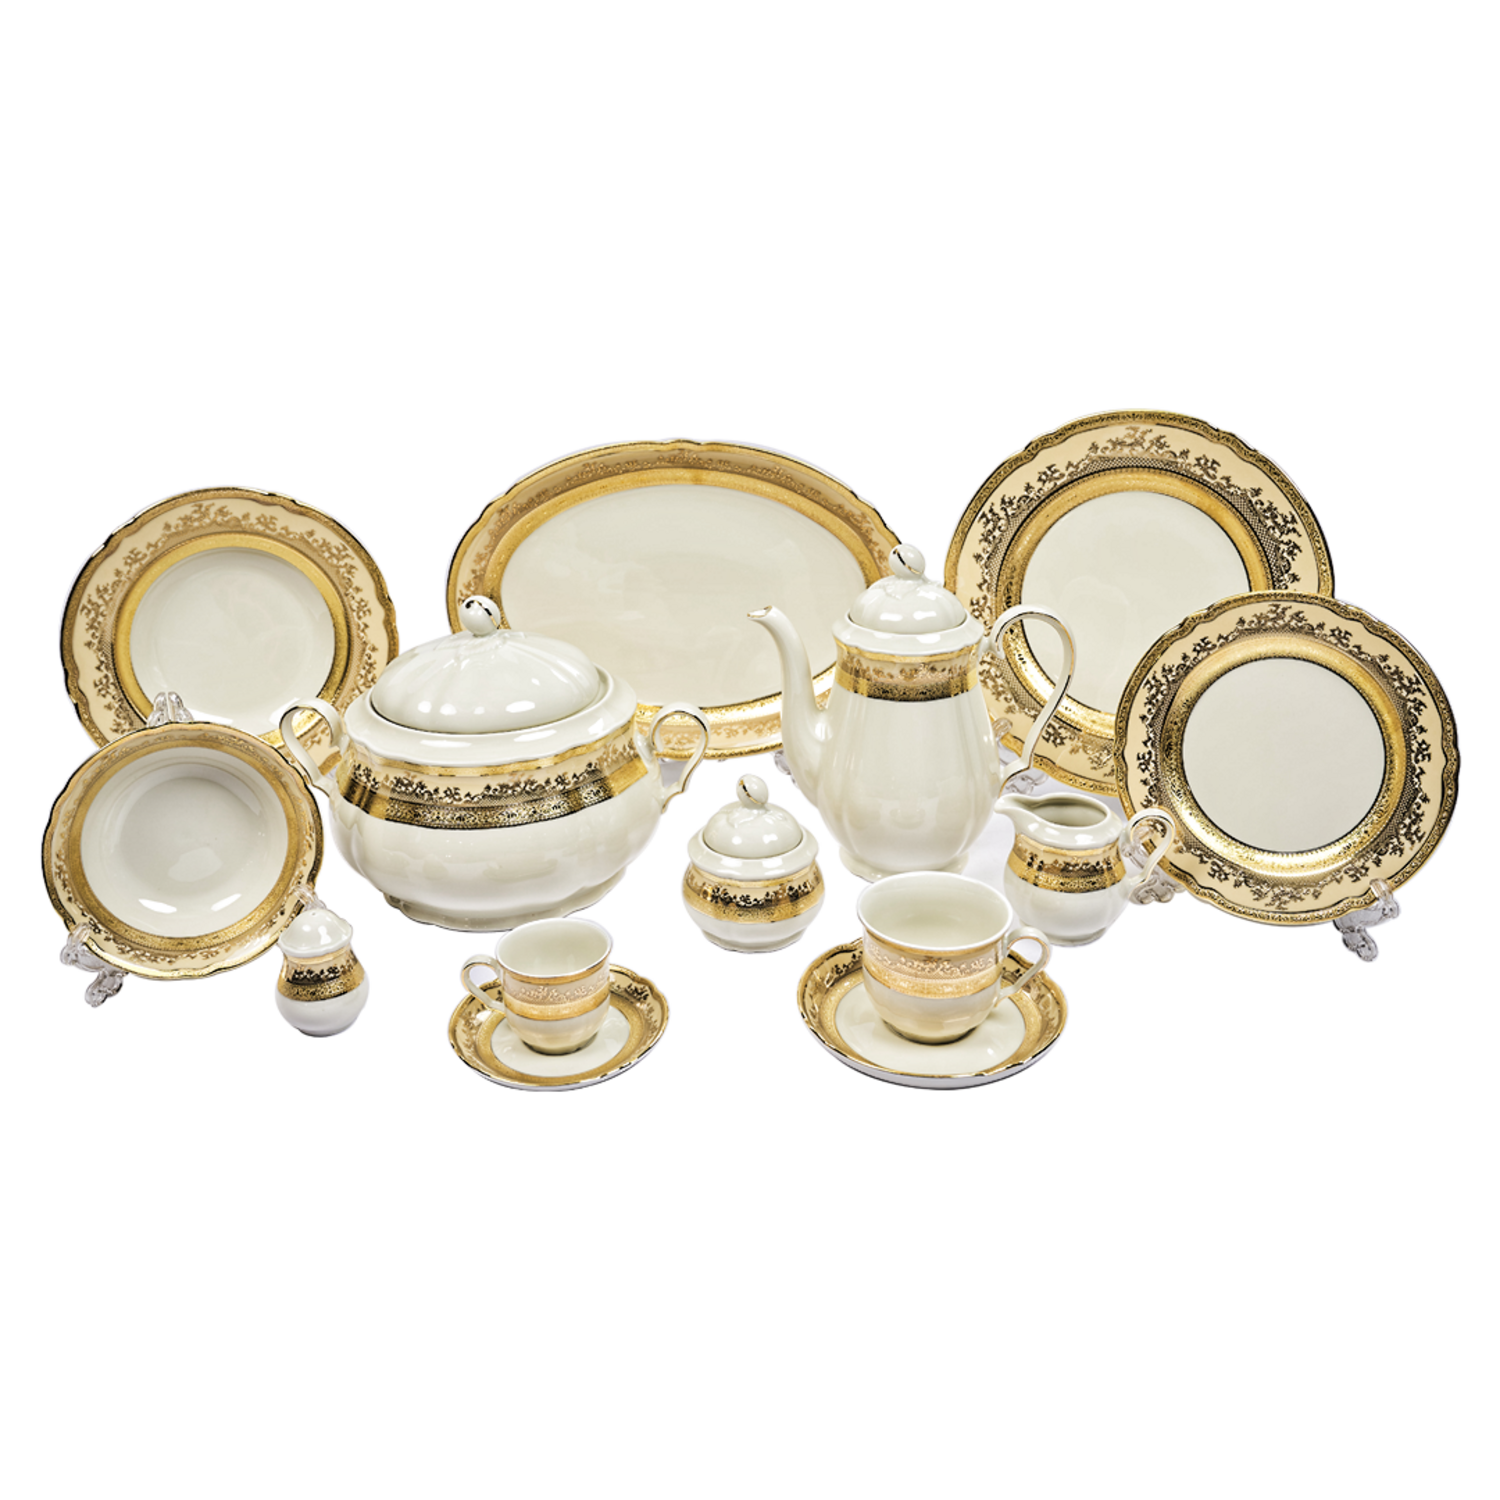 Falkenporzellan Dinner Set, 112 Pieces -Cream & Gold -Porcelain